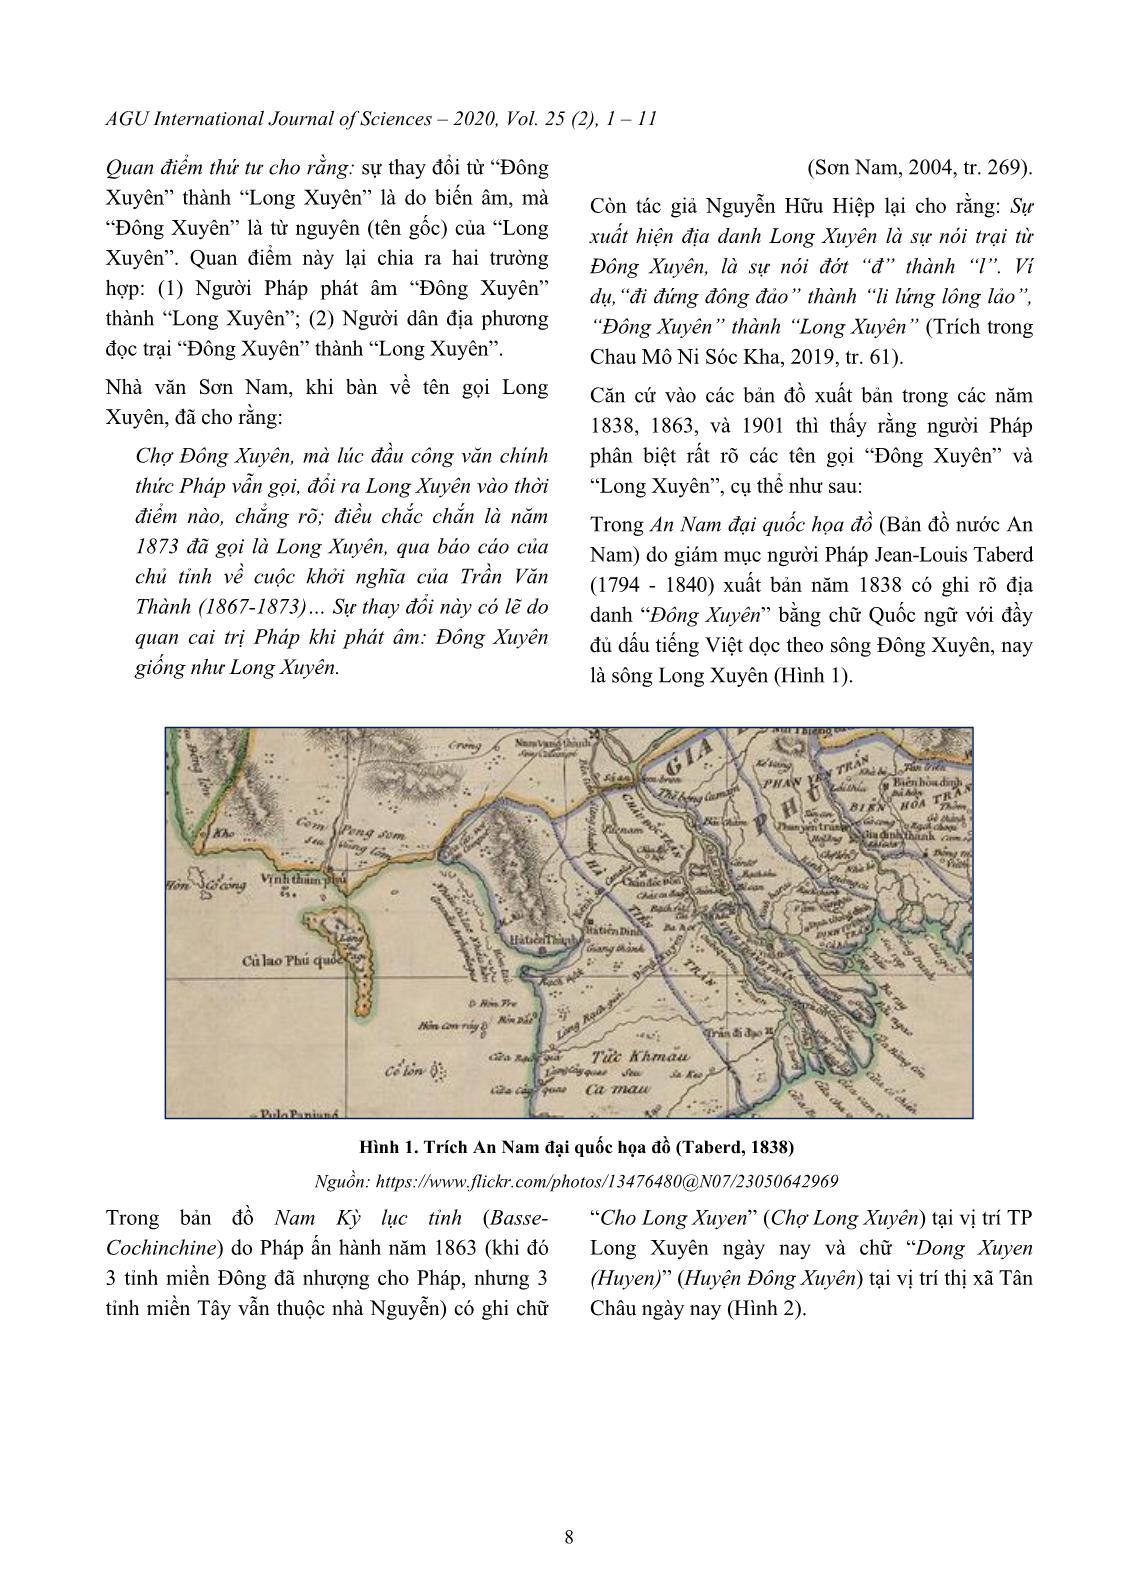 Tìm hiểu nguồn gốc và ý nghĩa của địa danh “Long Xuyên” ở tỉnh An Giang trang 8